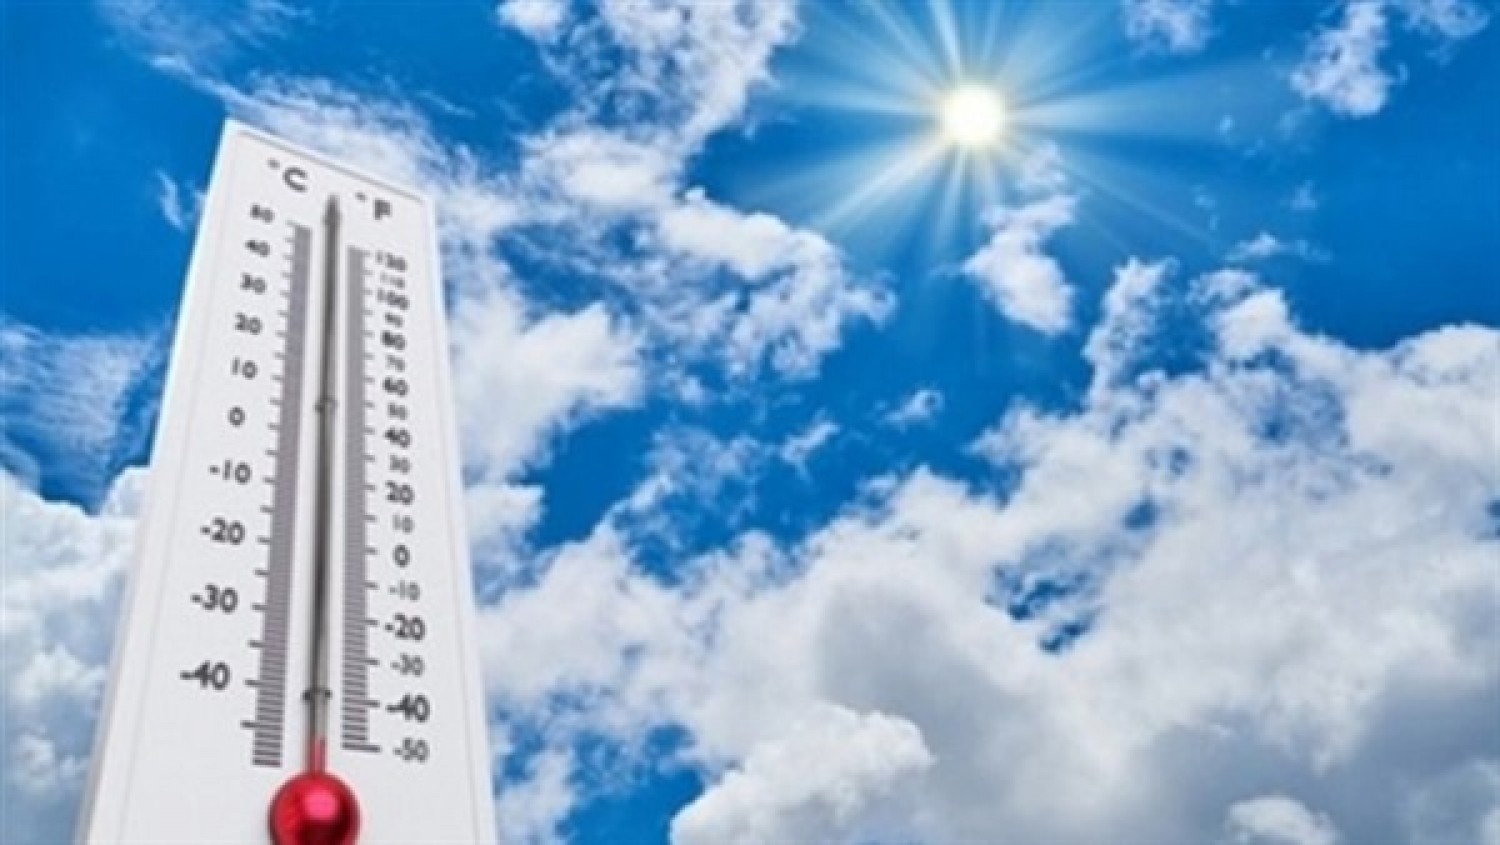 درجات الحرارة اليوم الثلاثاء 28-4-2020 في مصر - جريدة المال